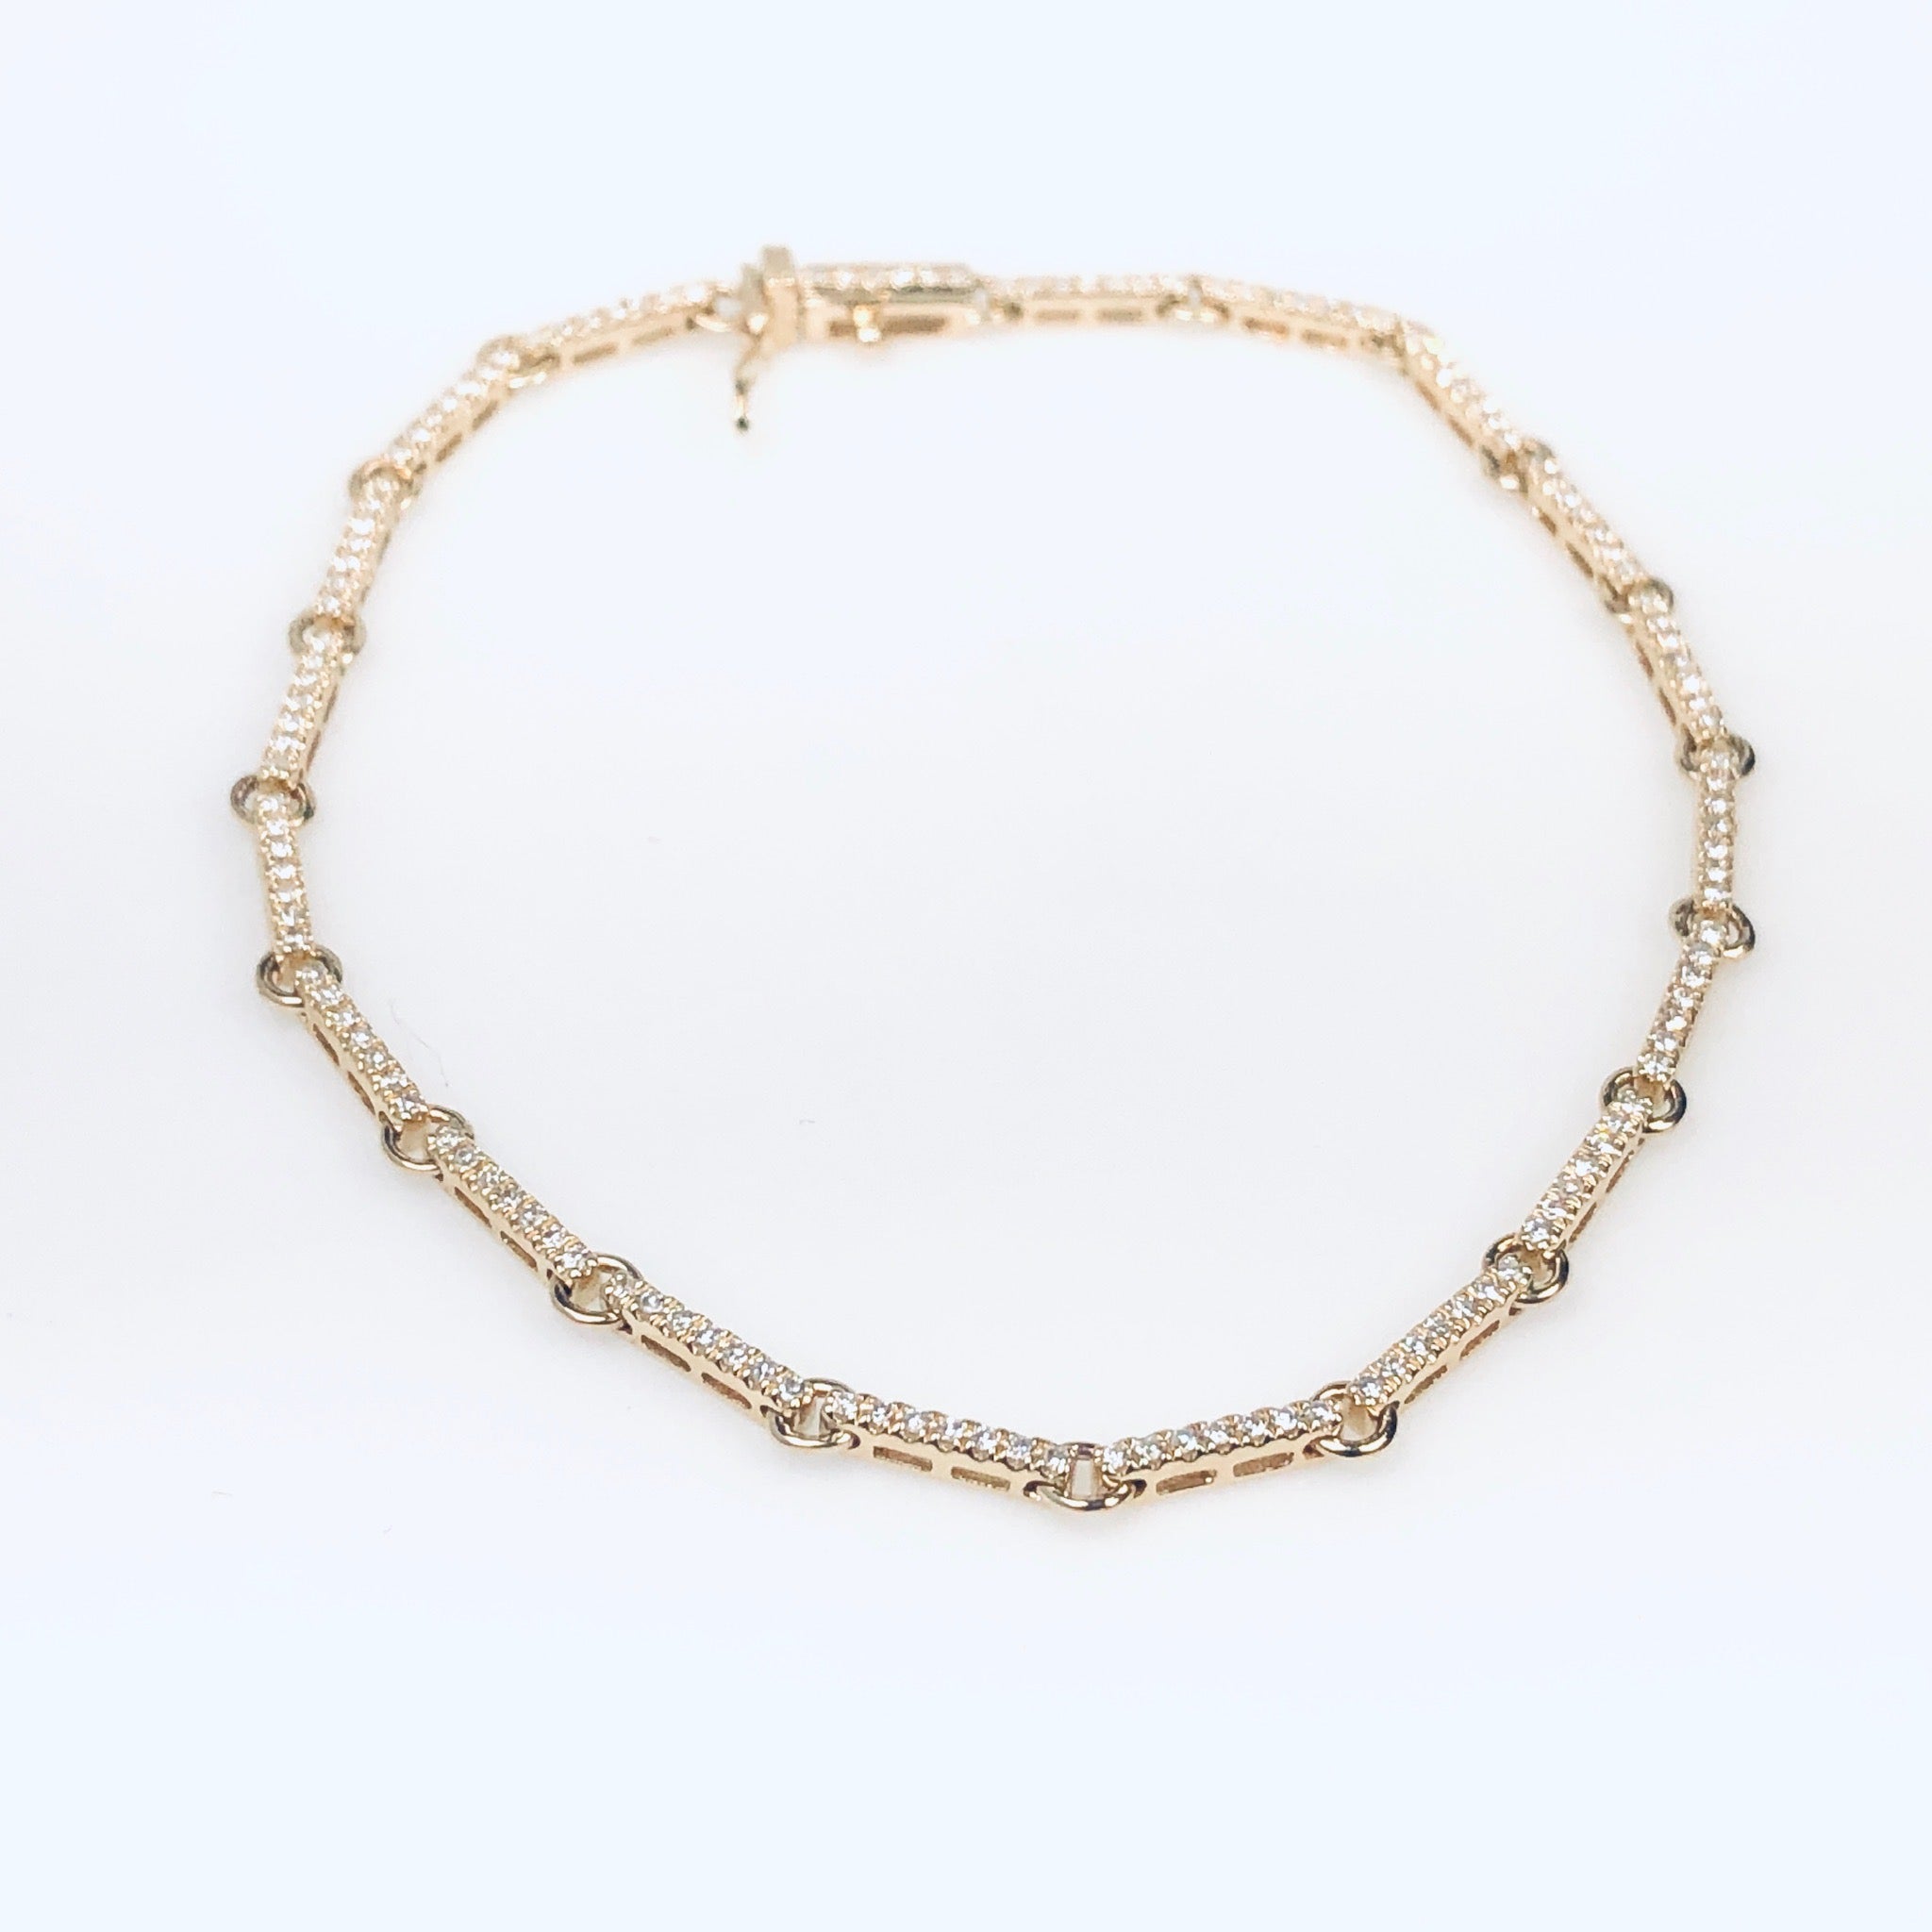 WD746 14kt gold bar link bracelet detailed with pave set diamonds